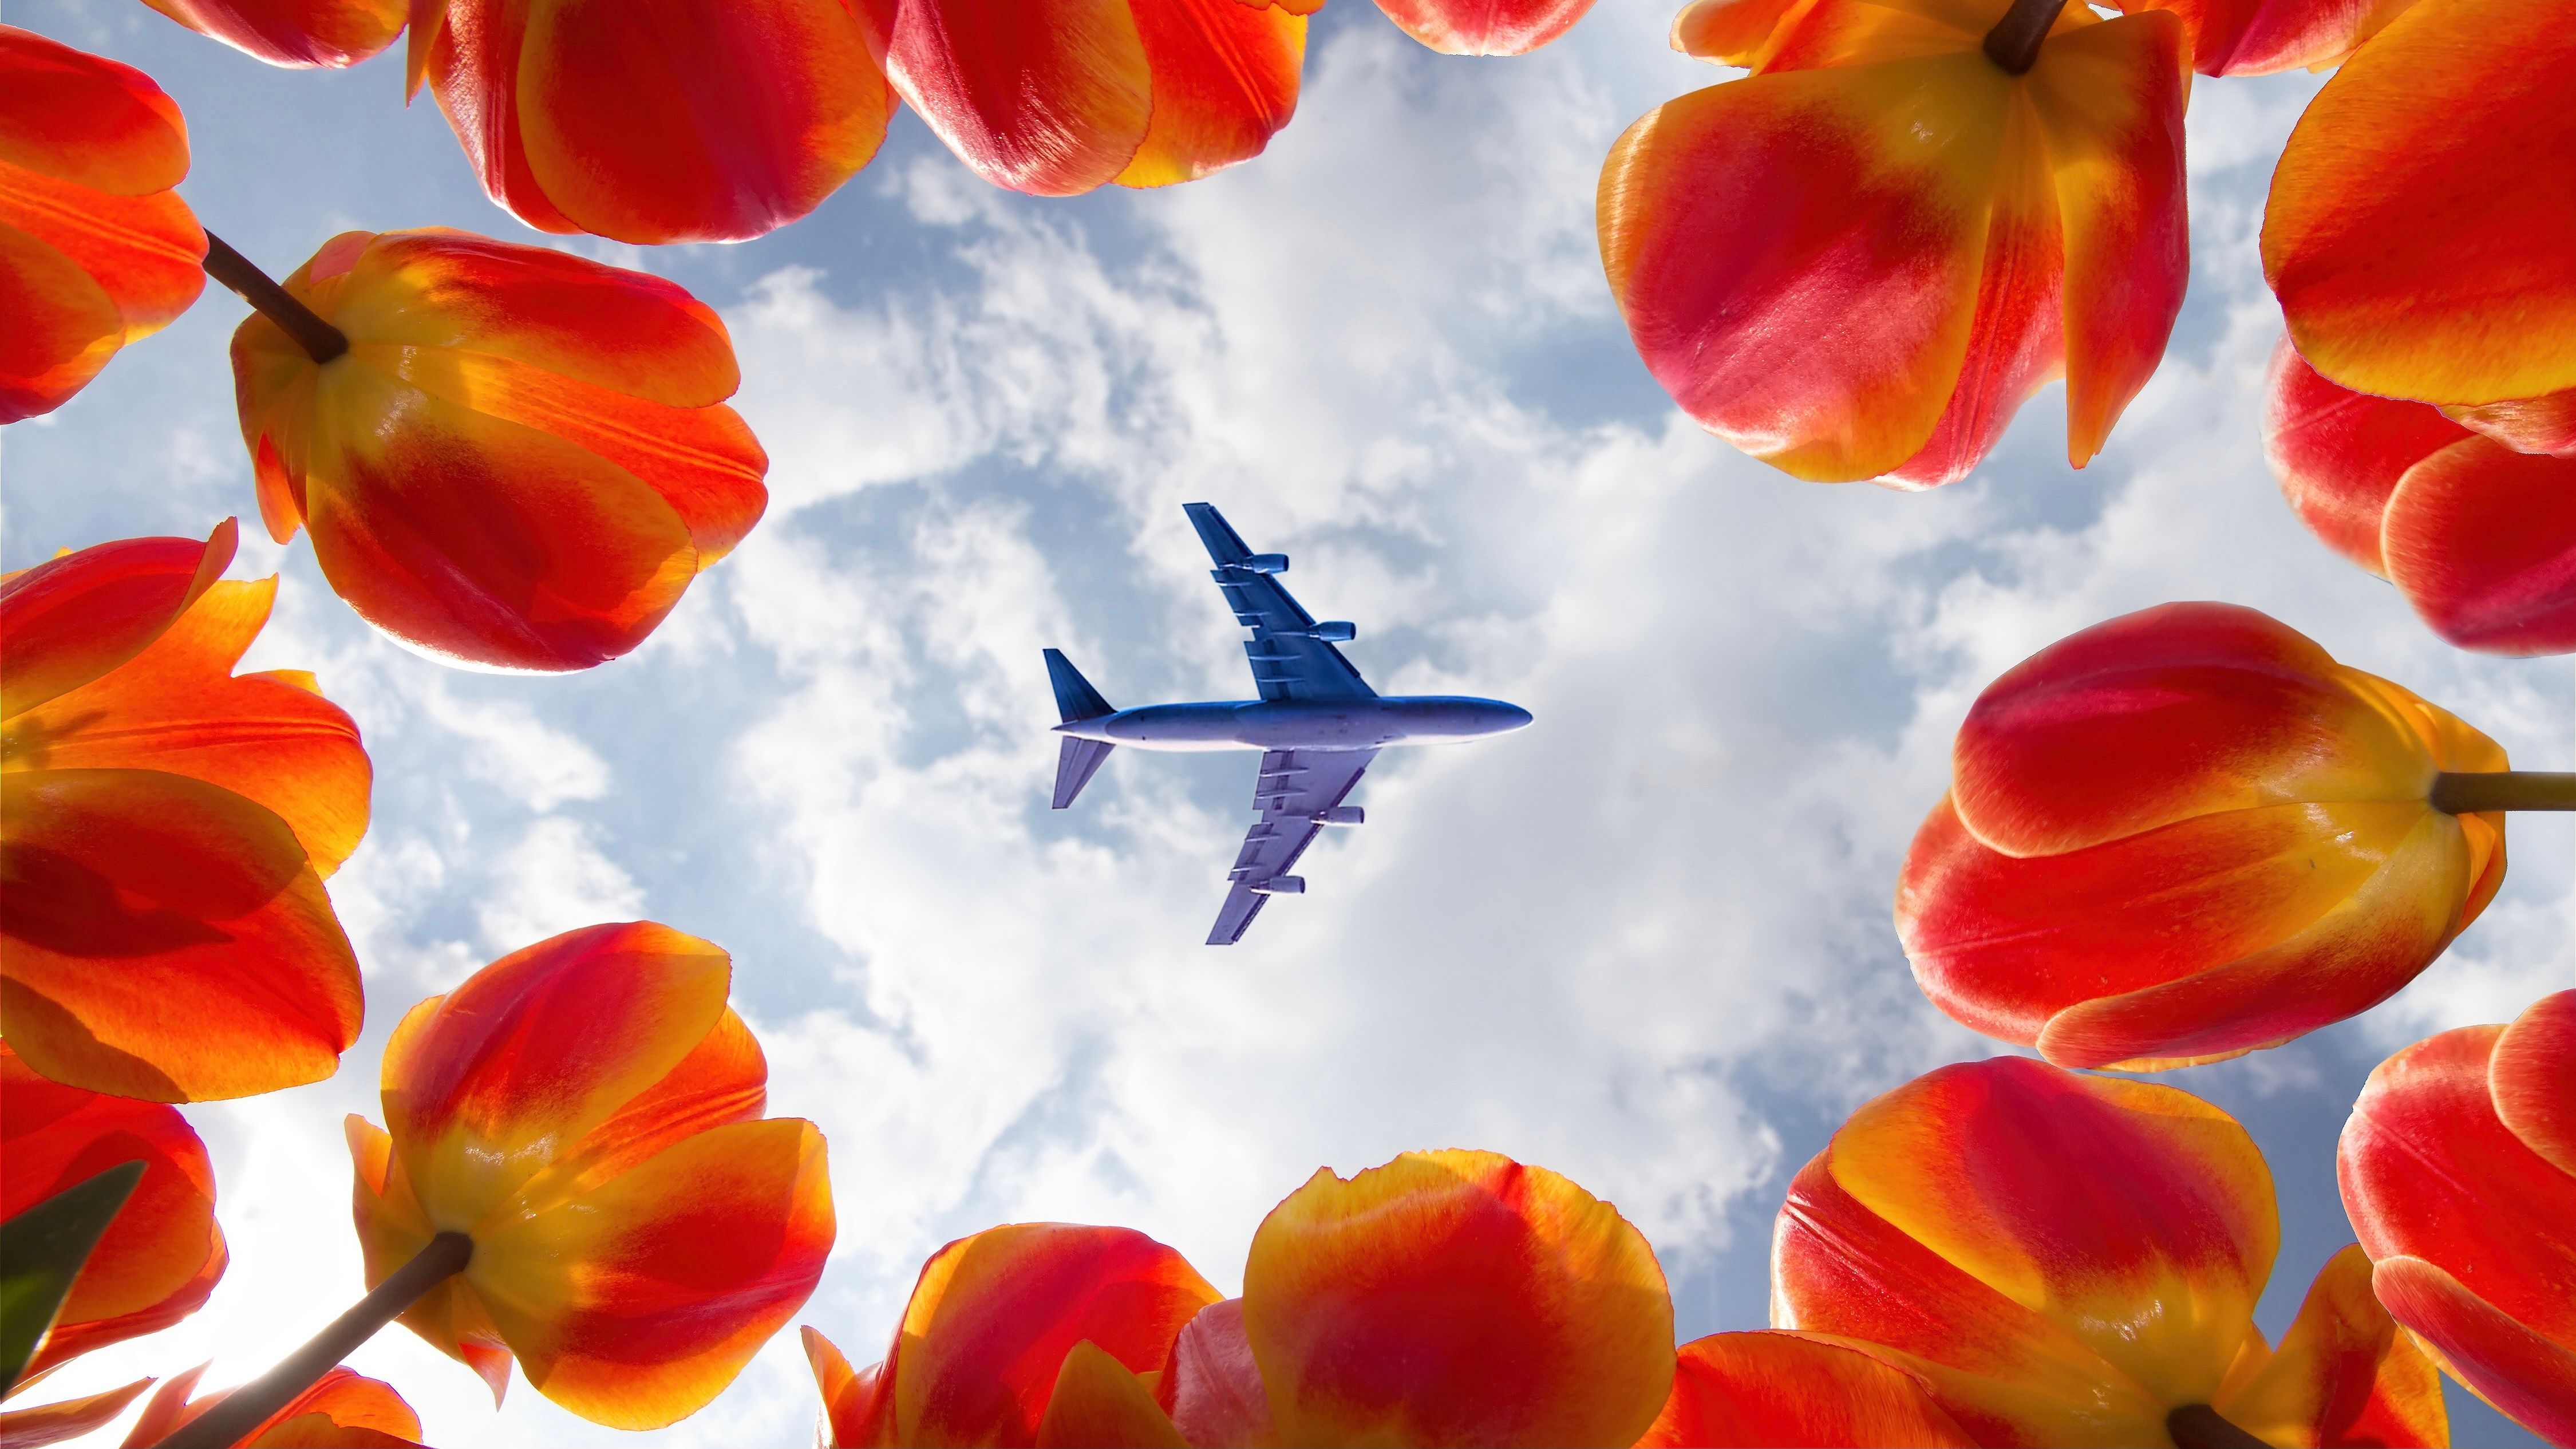 Flowers Below Aircraft 